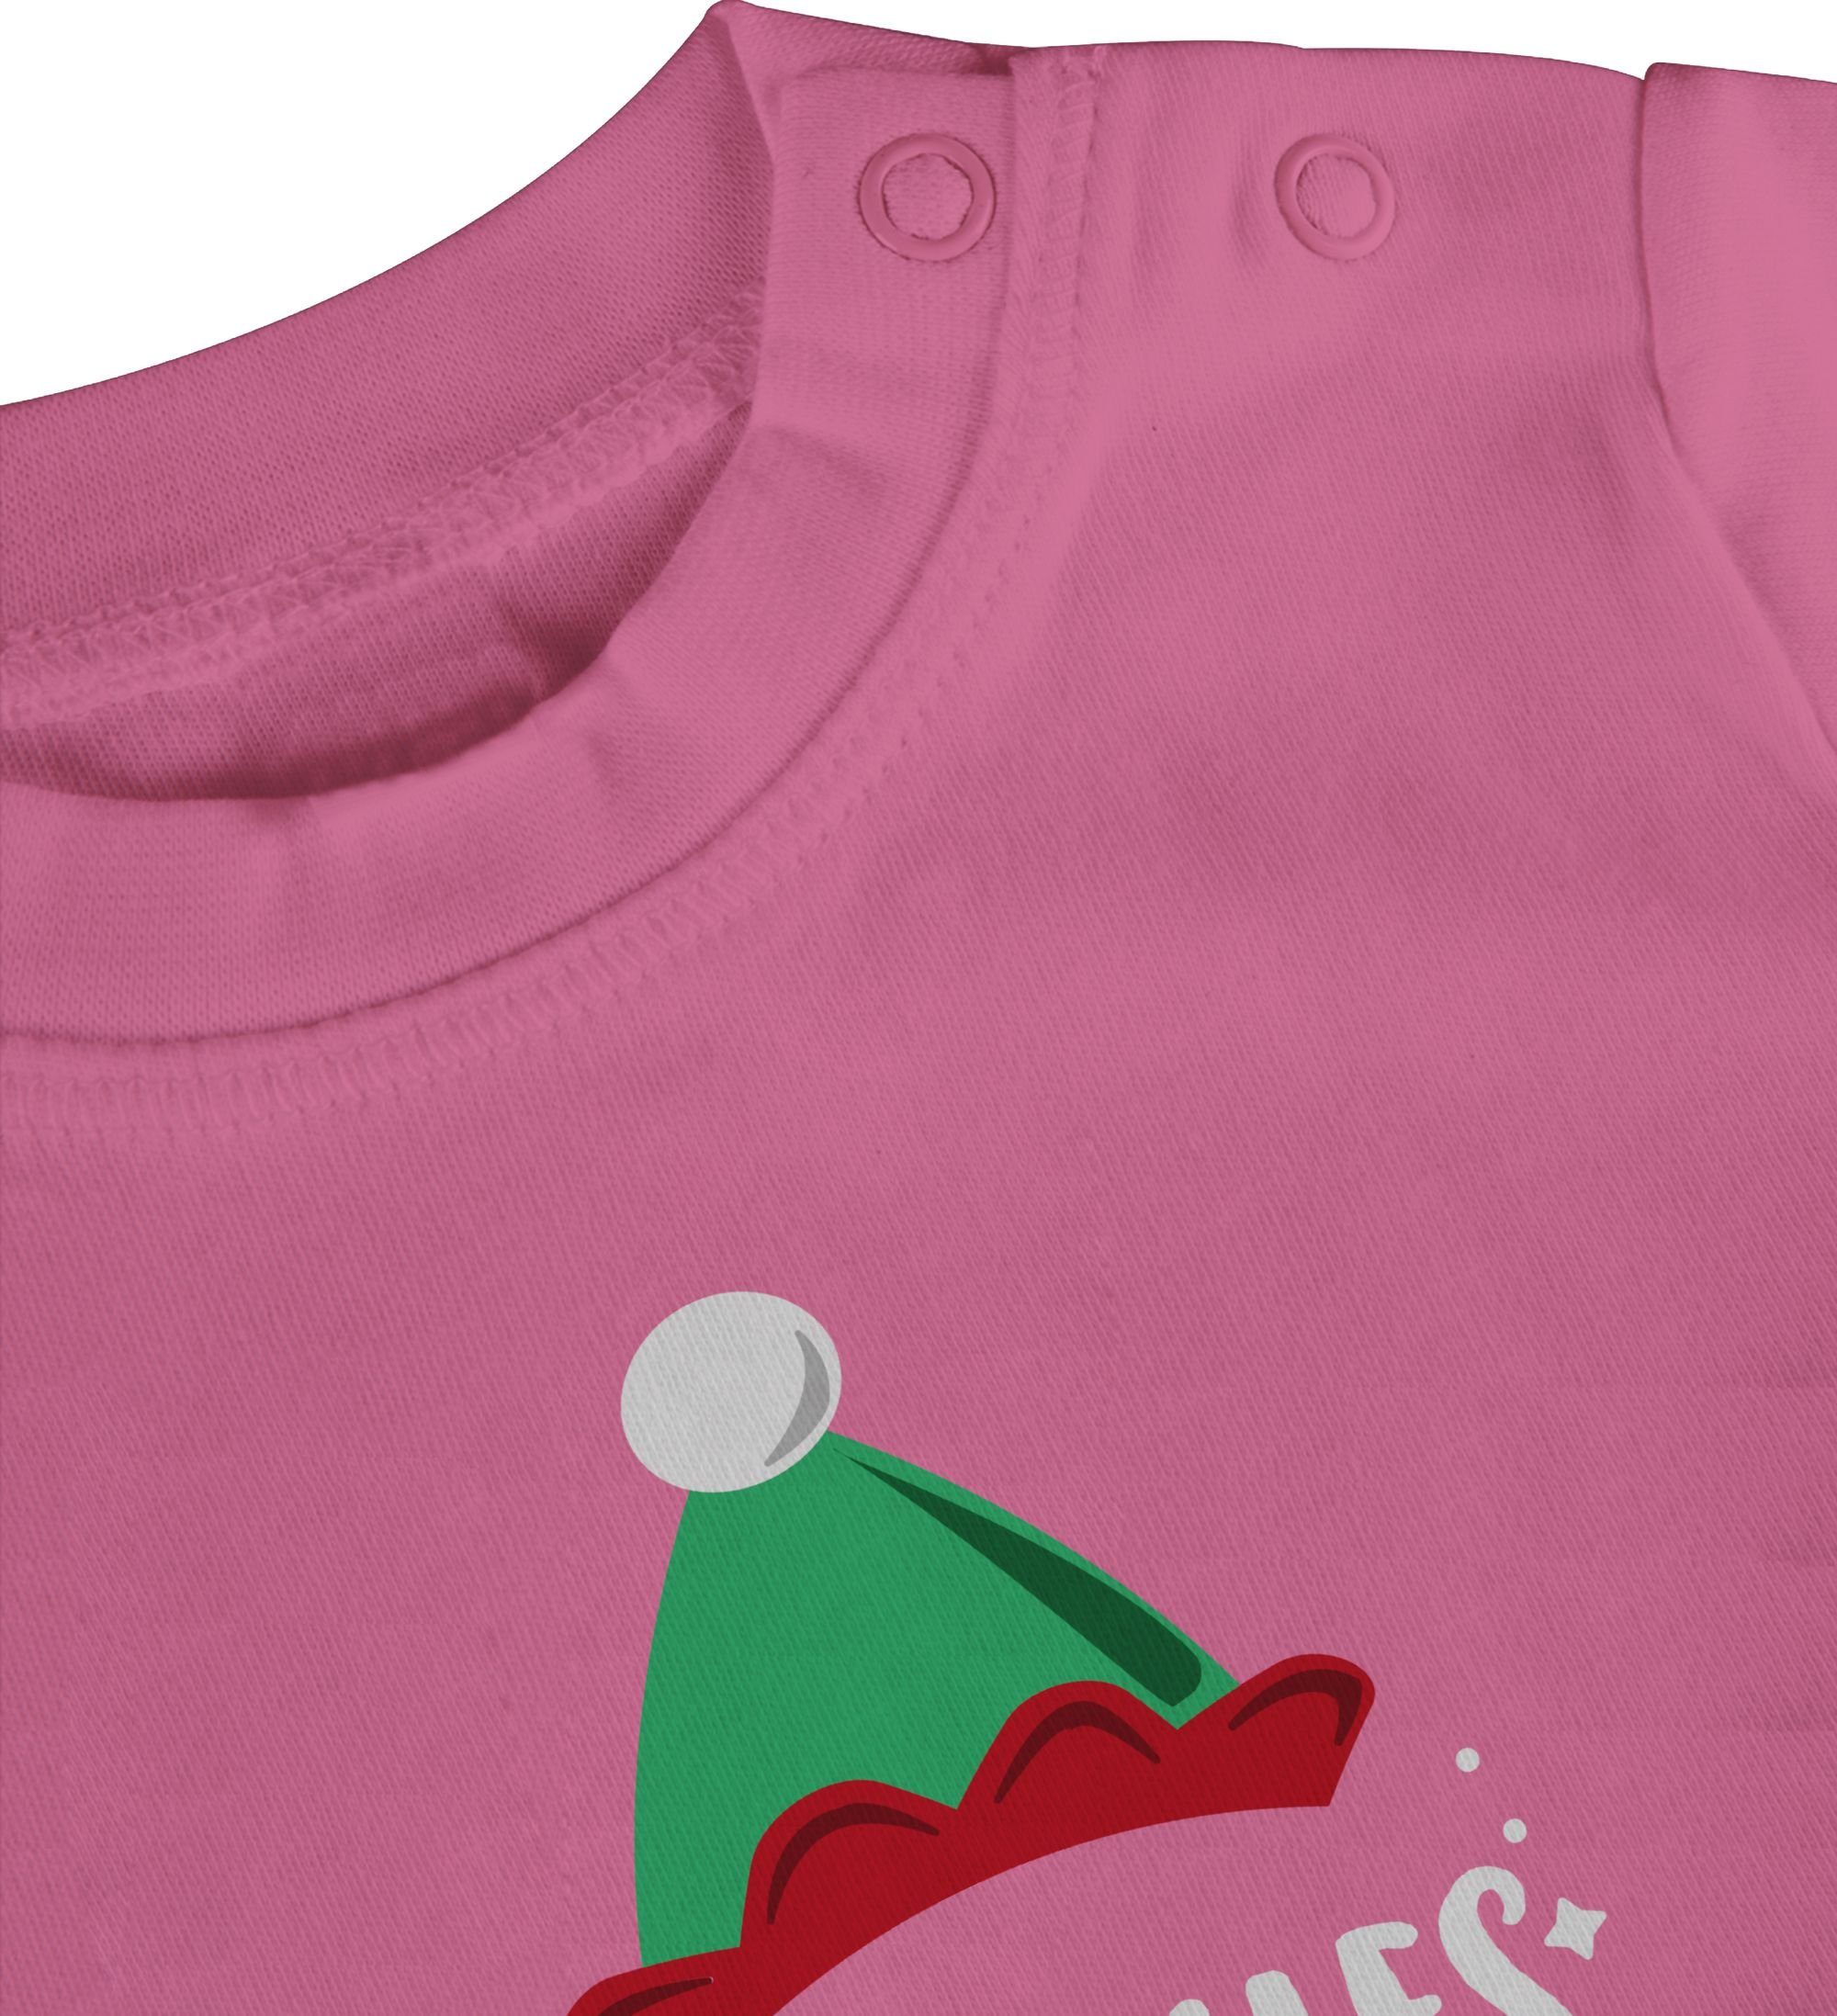 Baby Kleidung 1 Shirtracer Pink Weihnachten Aushilfs-Elf T-Shirt Weihnachten